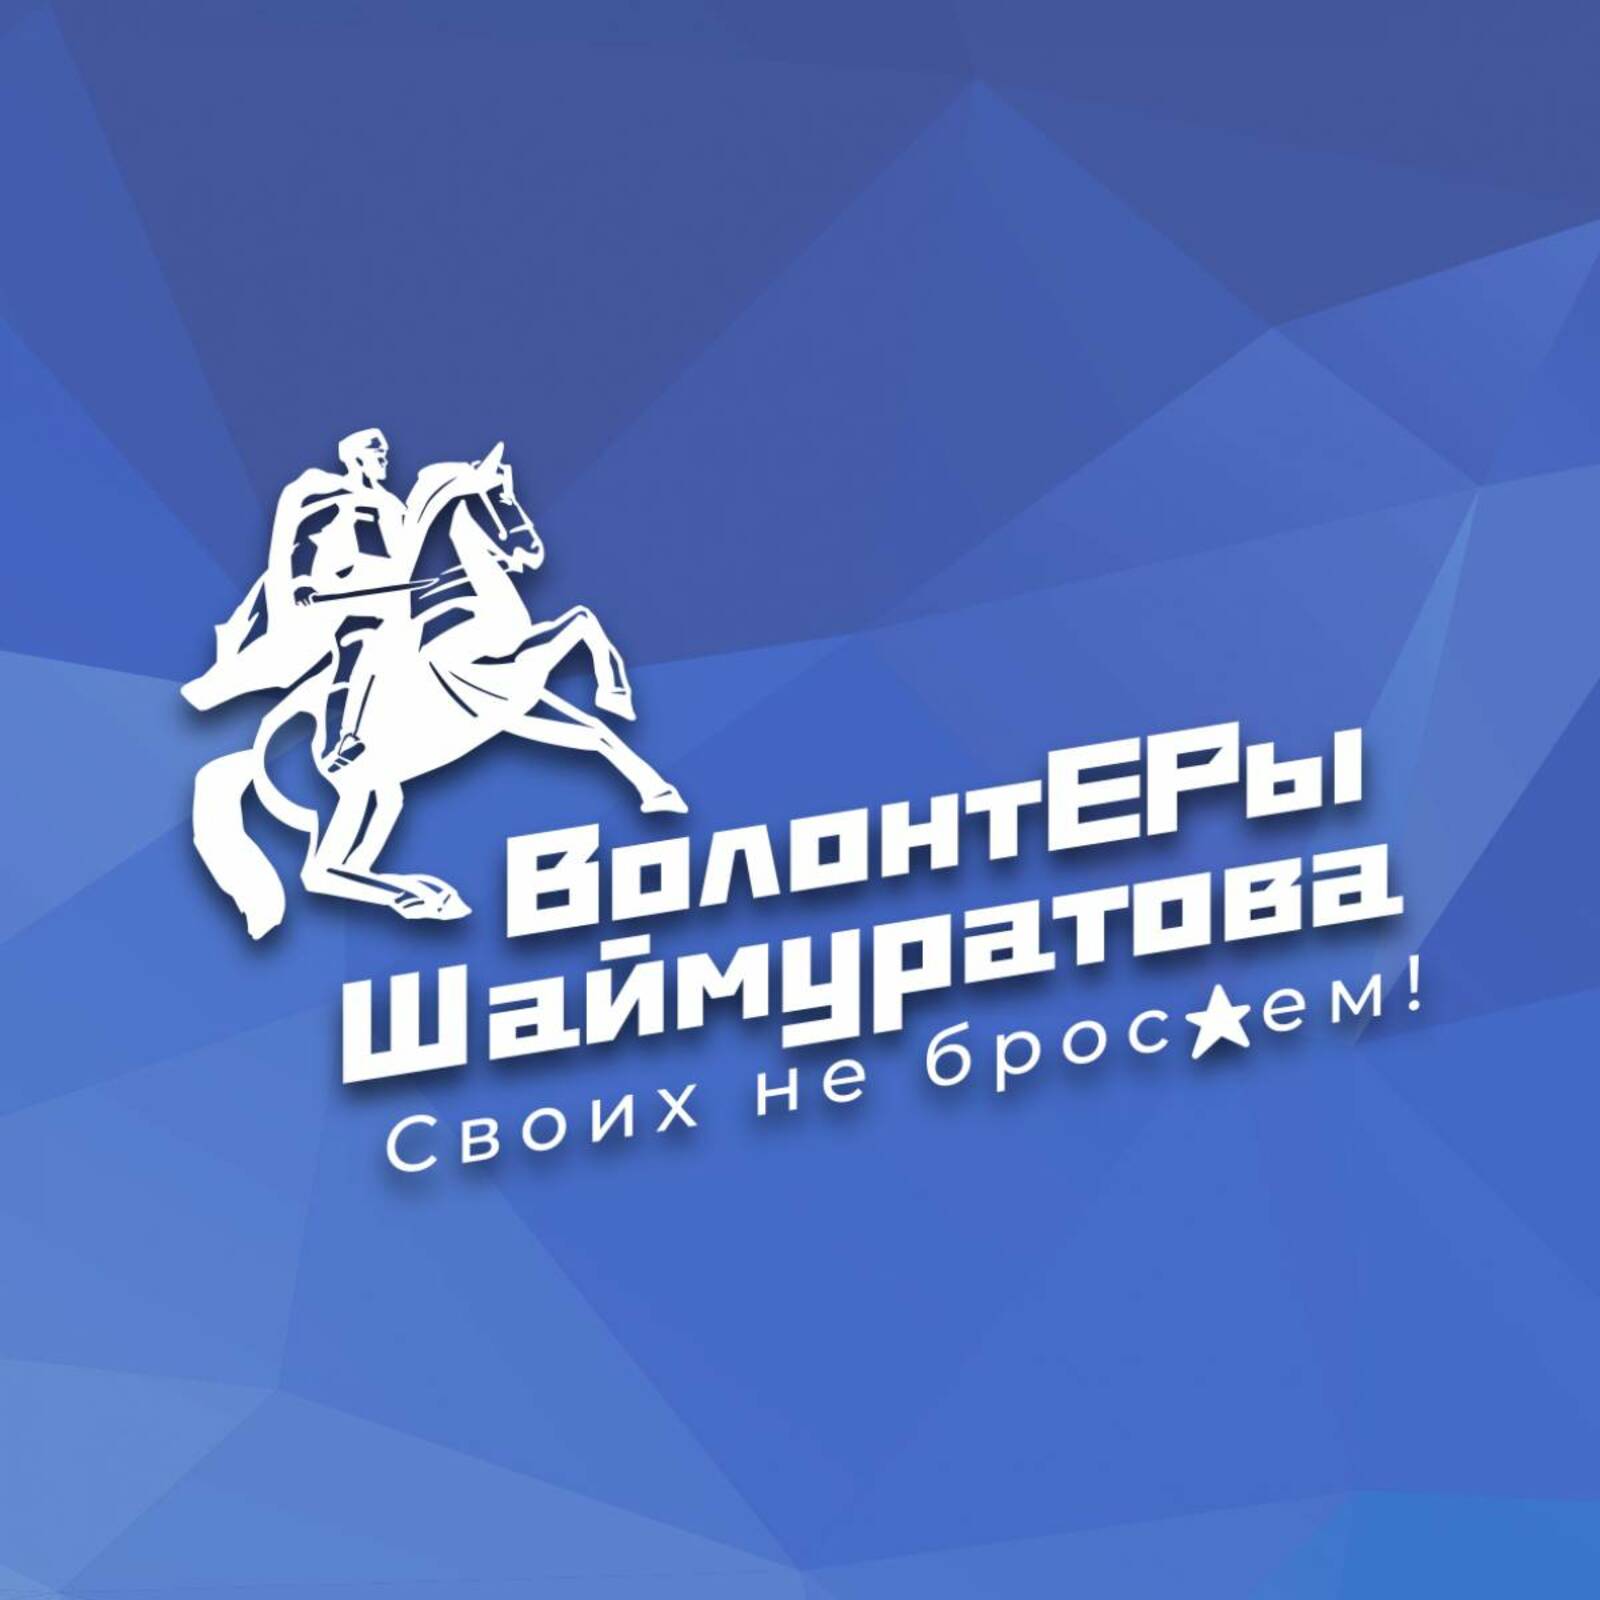 Волонтерский штаб имени Минигали Шаймуратова  принял в своем колл-центре 10 210 звонков